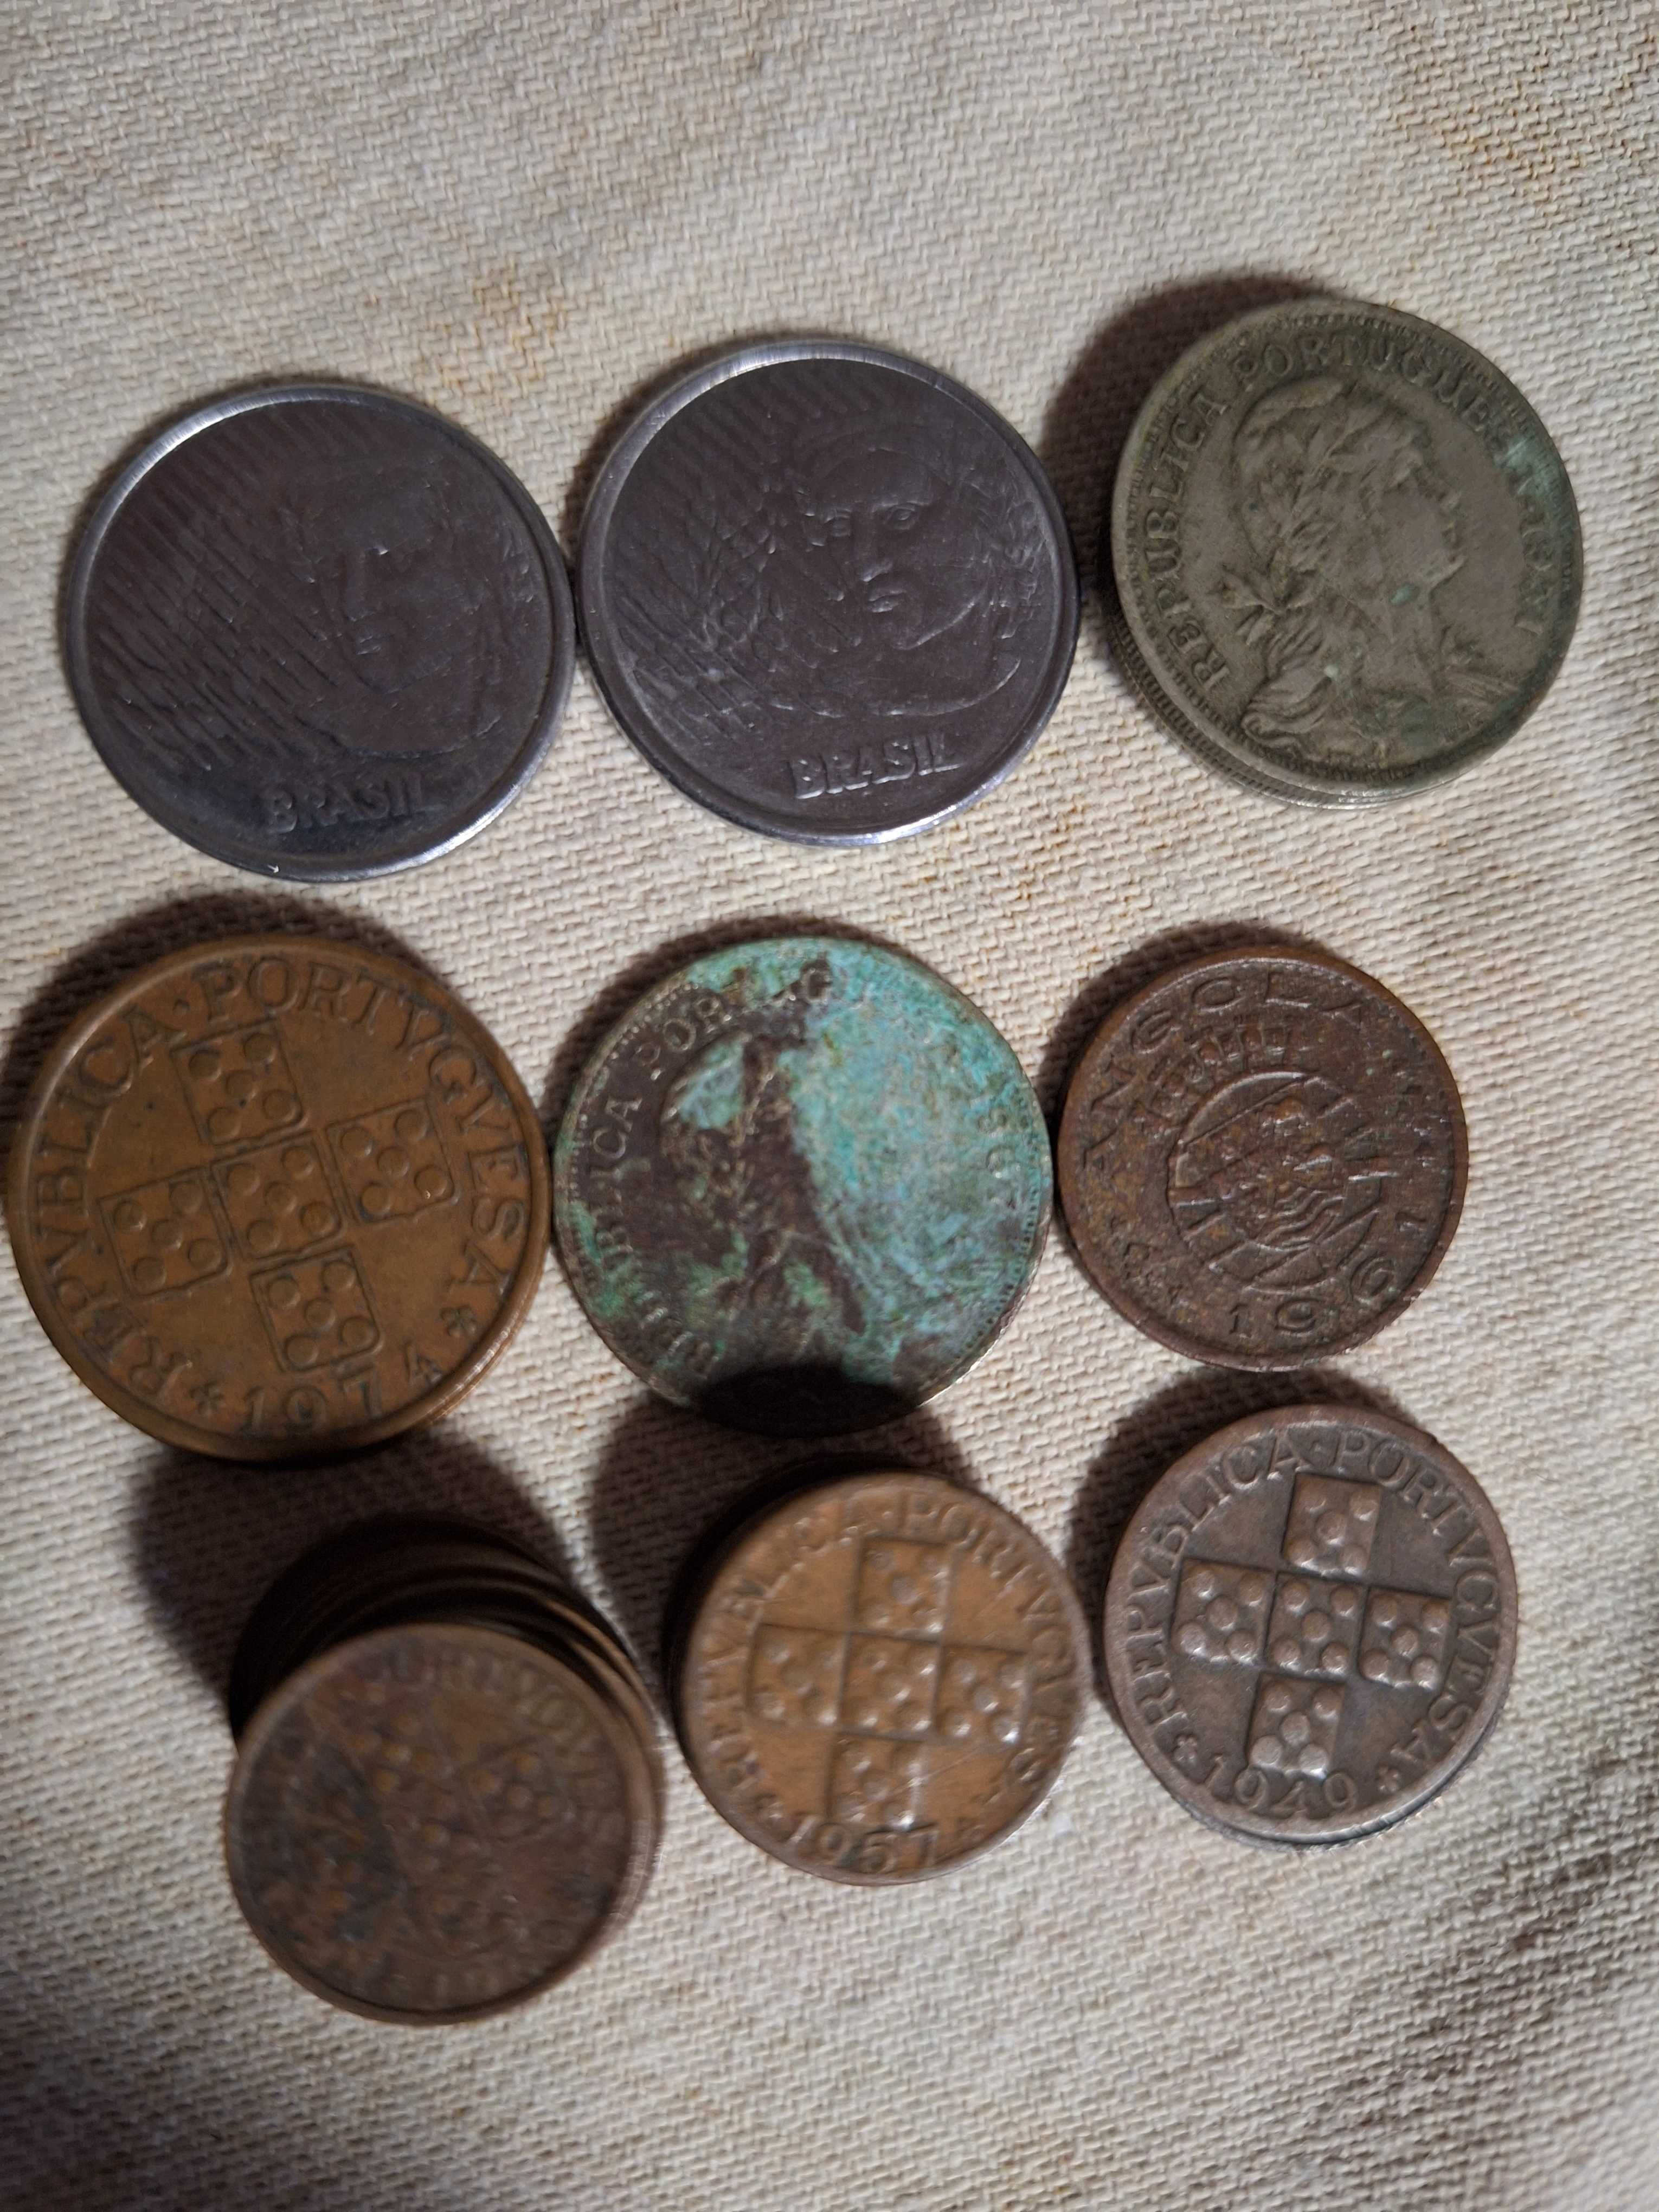 Moedas antigas de centavos